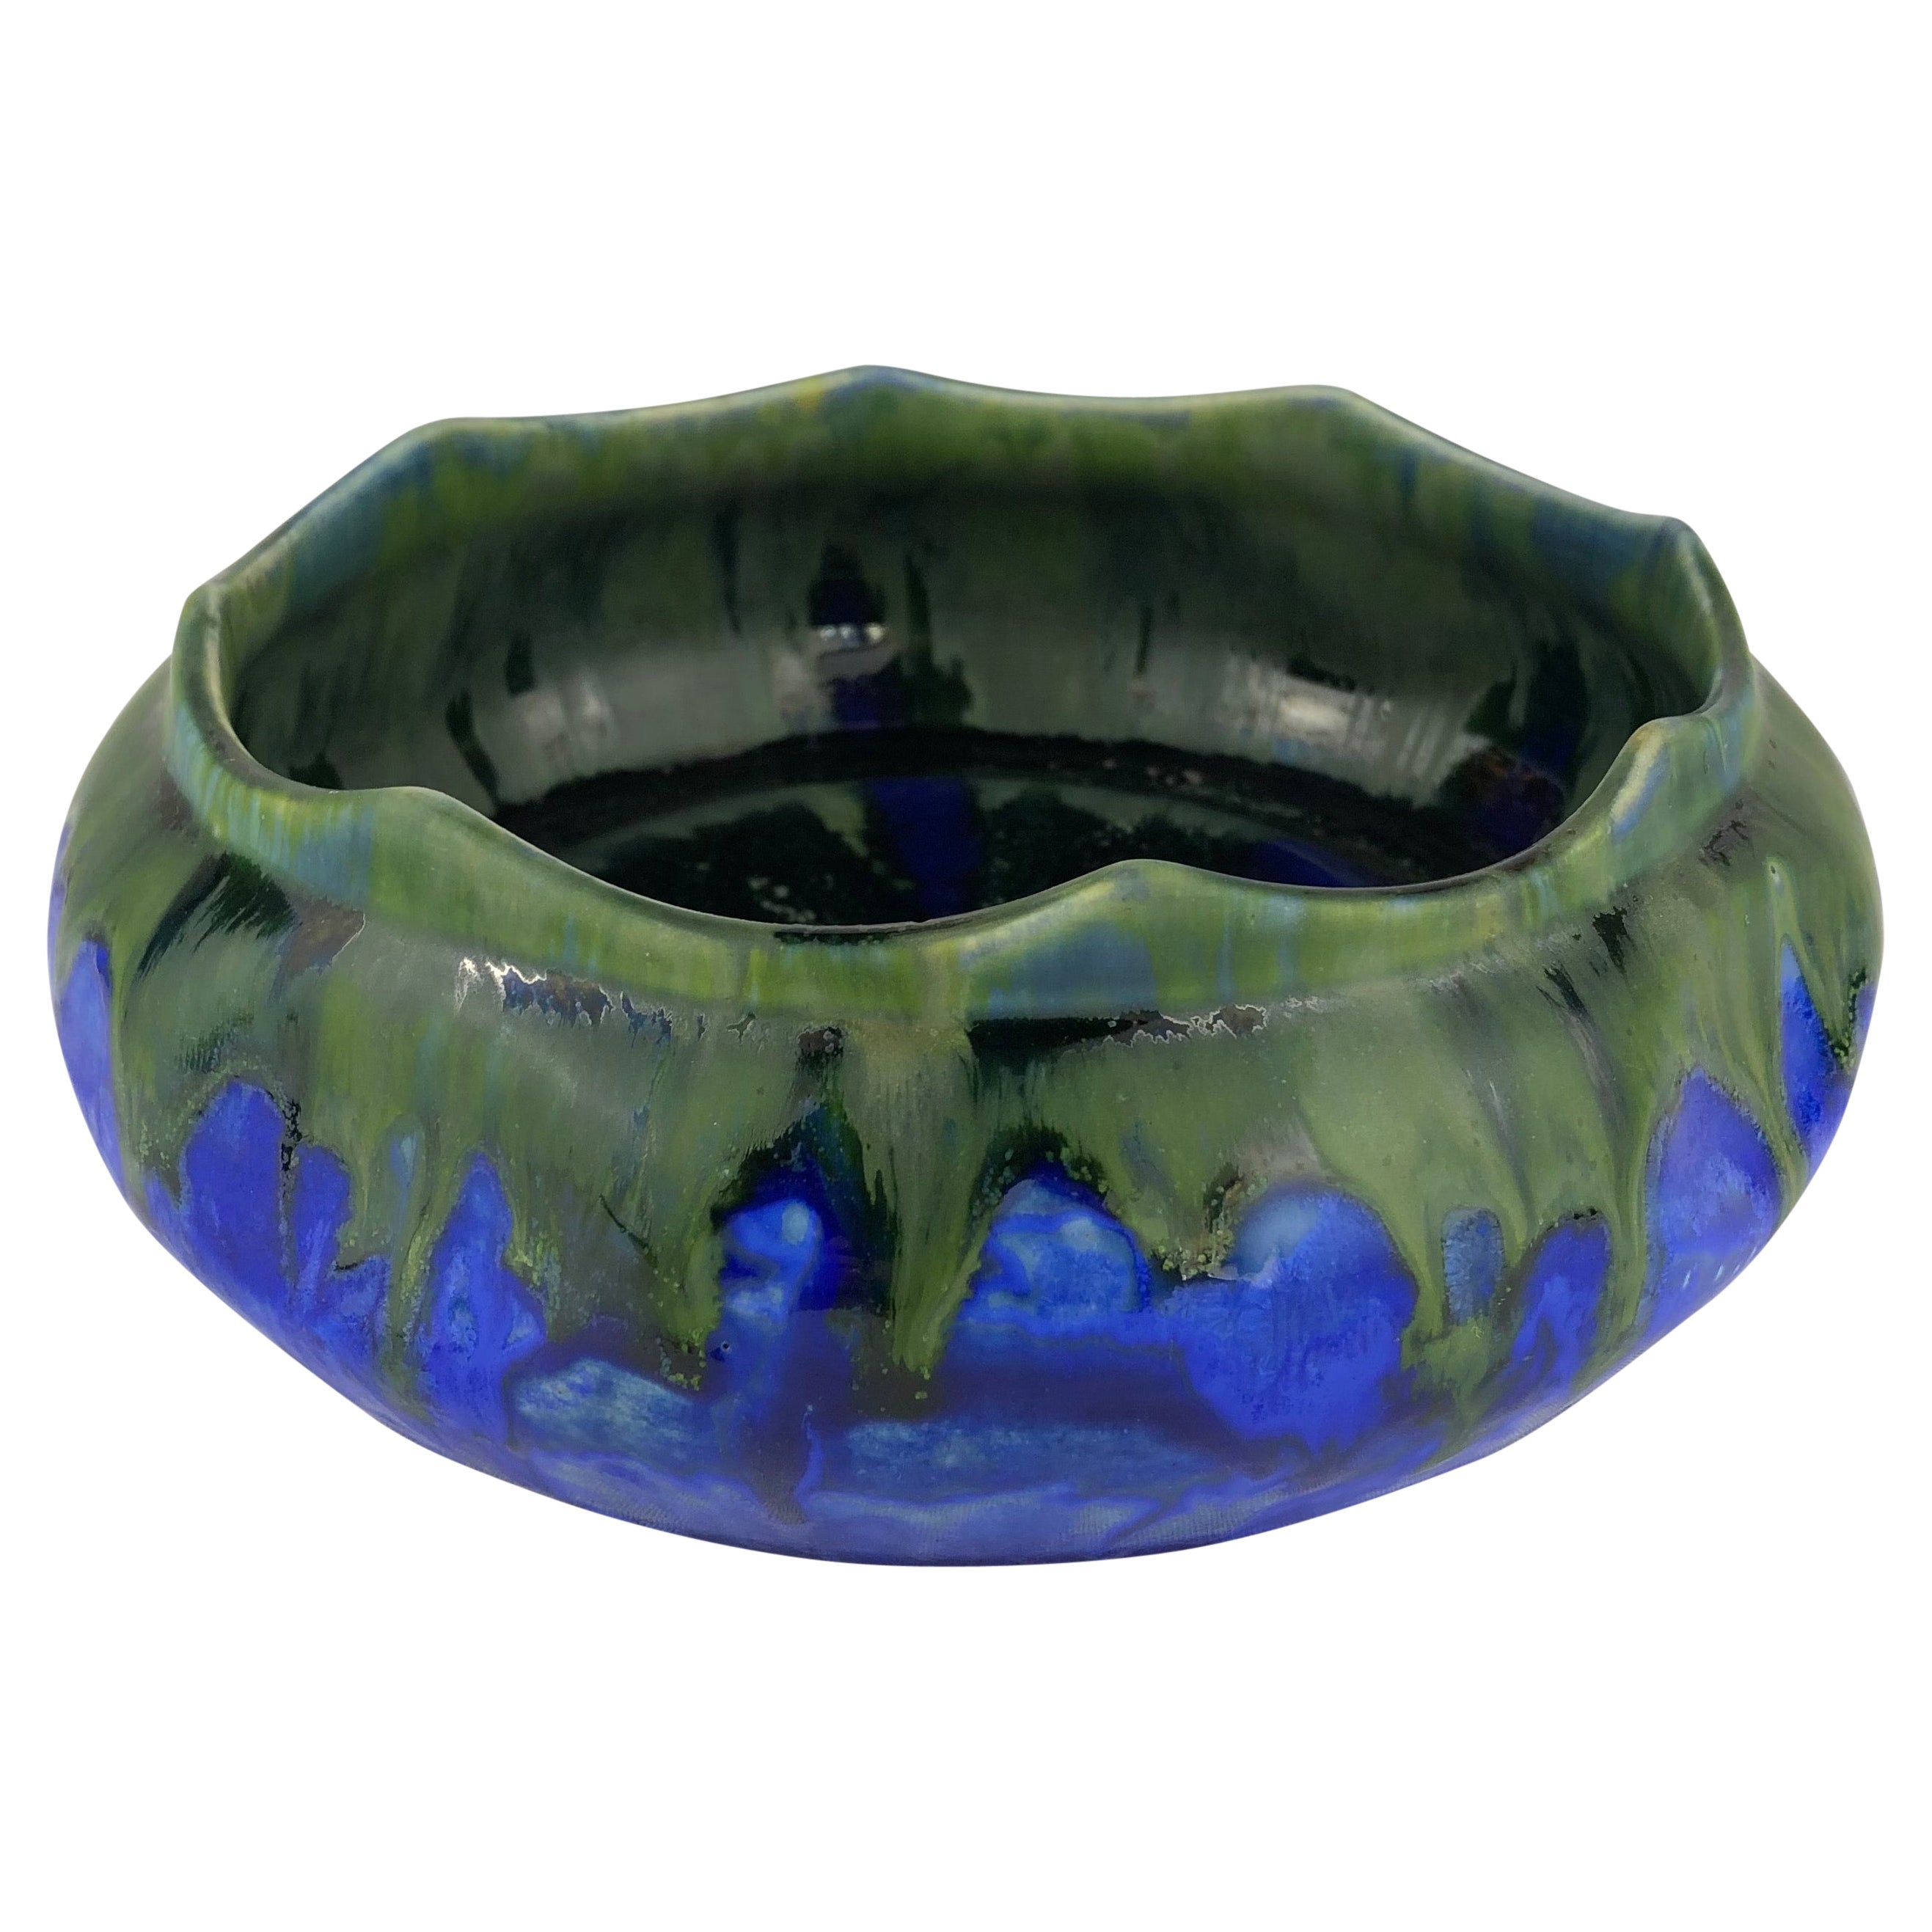 Gilbert Menetier French Art Deco Ceramic Bowl, Signed